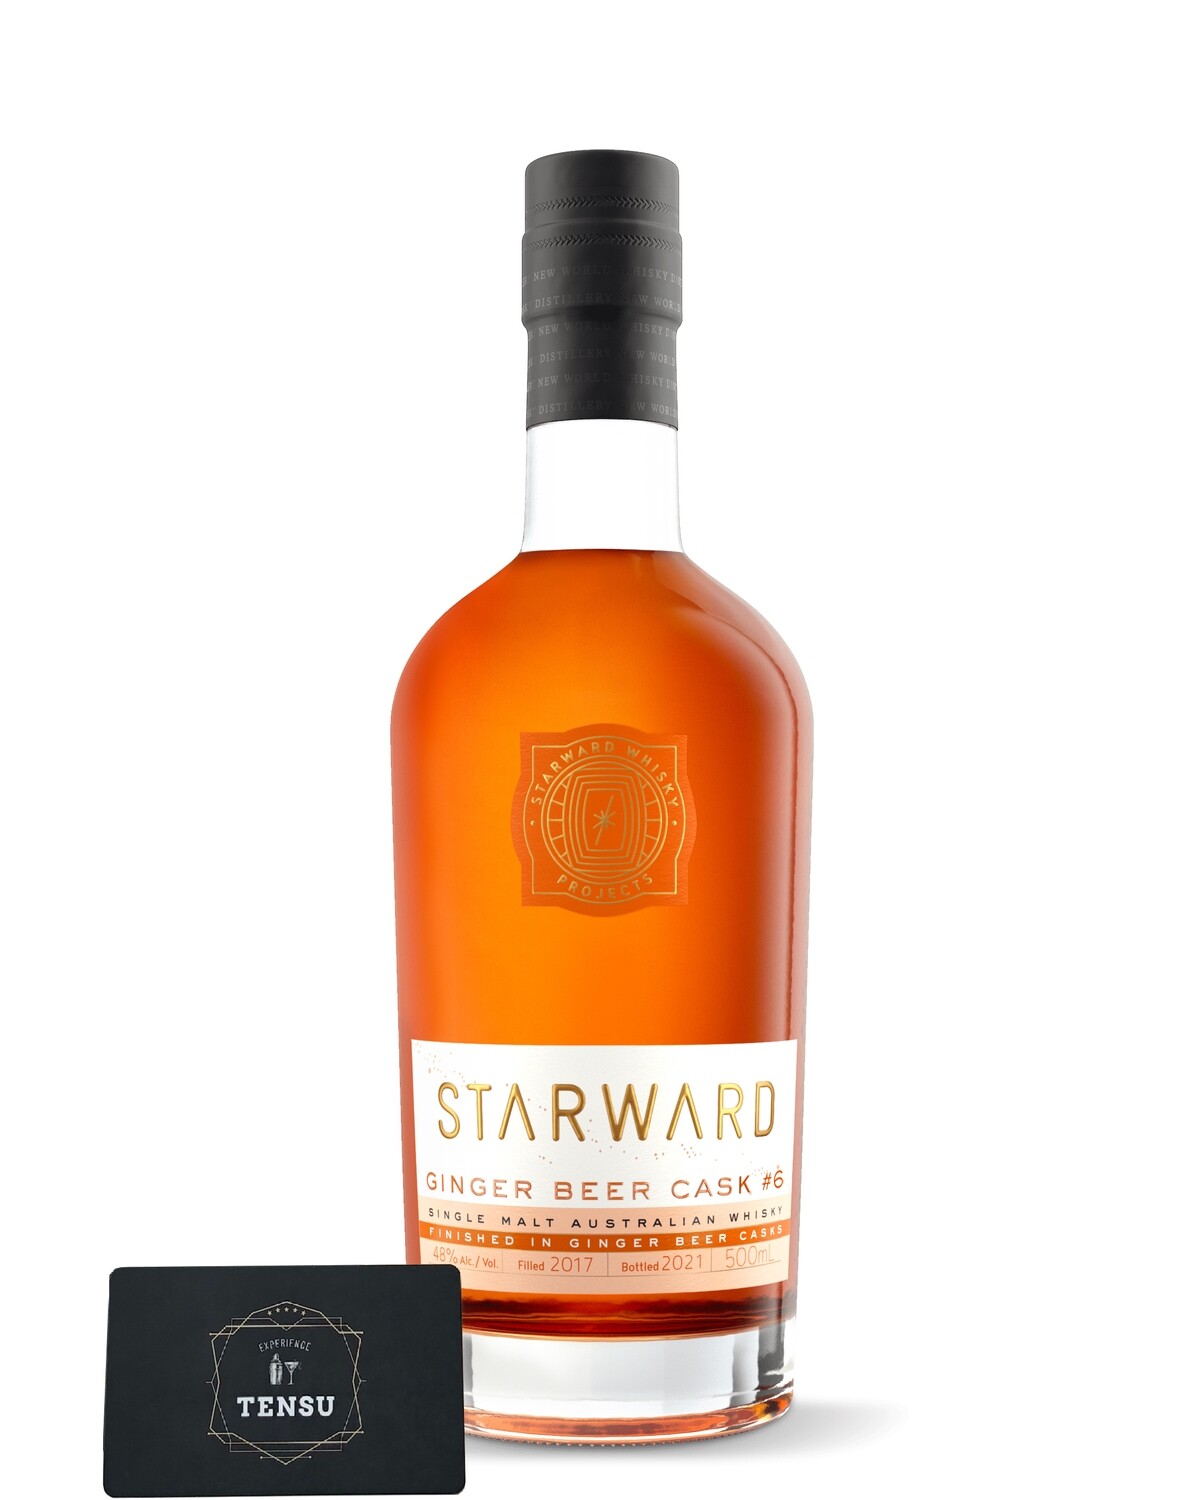 Starward Ginger Beer Cask - Single Malt Australian Whisky (2017-2021) 48,0 "OB"